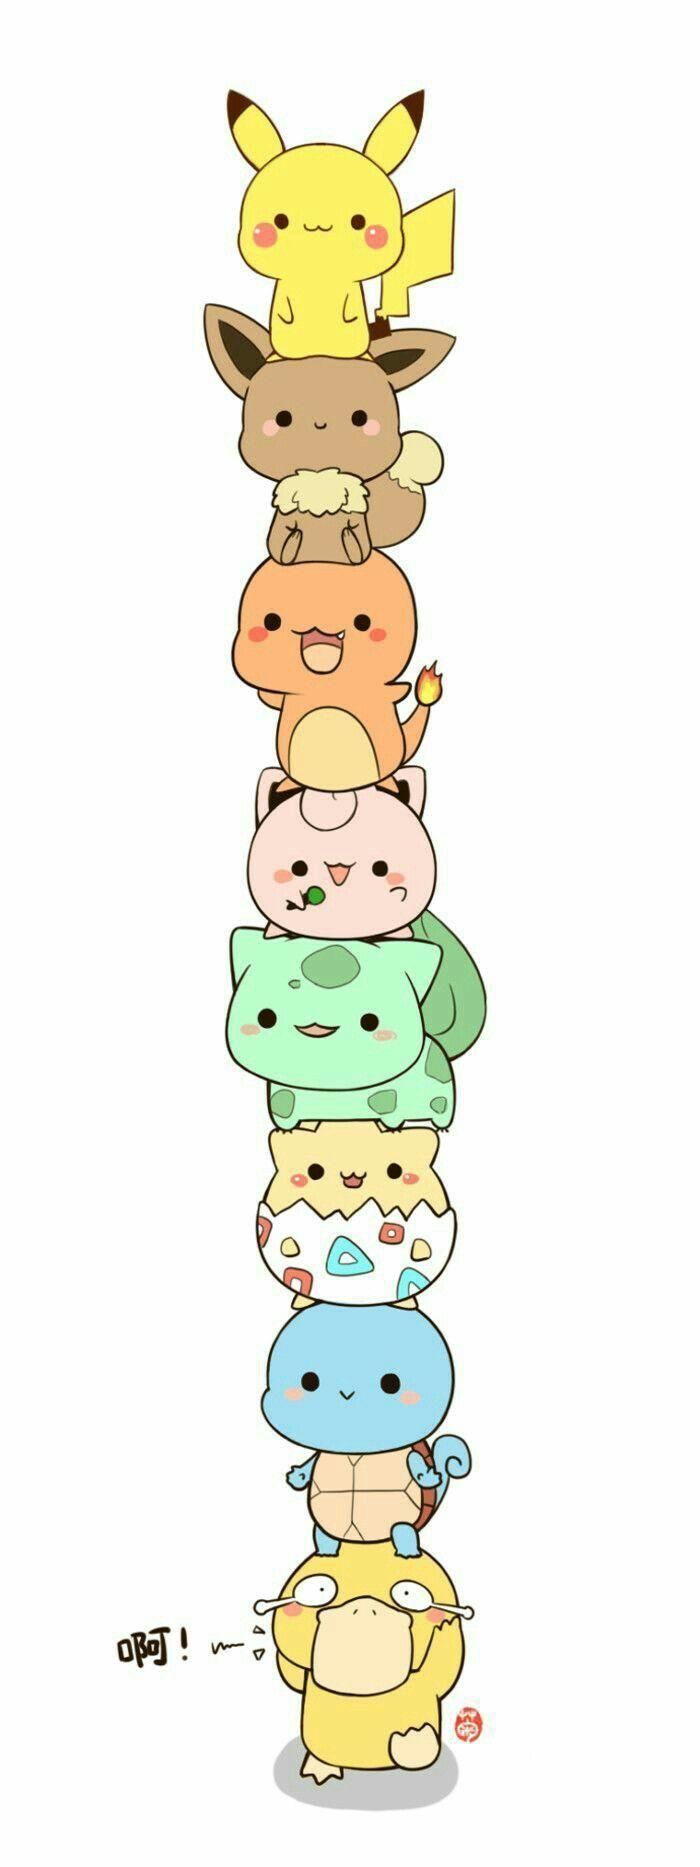 Best Ideas About Cute Pokemon Wallpaper